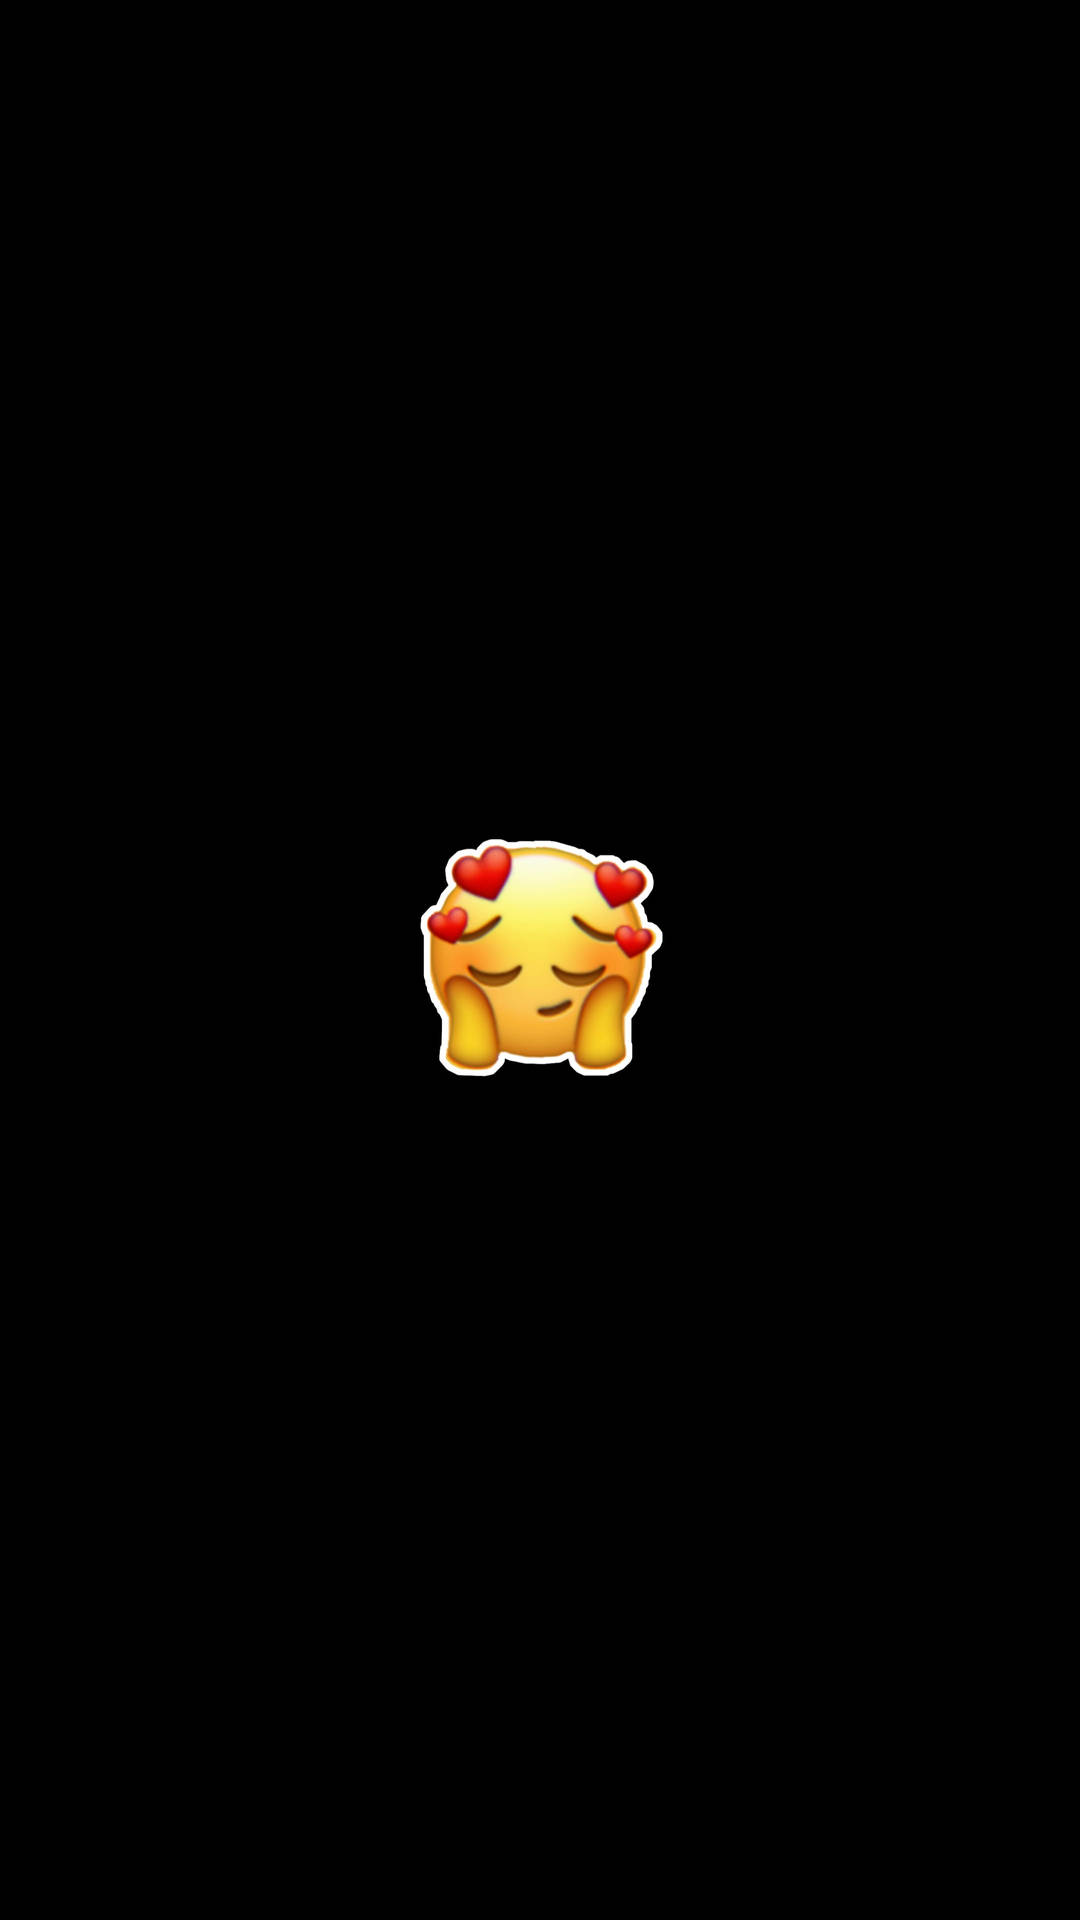 Cute Mobile In Love Emoji Background